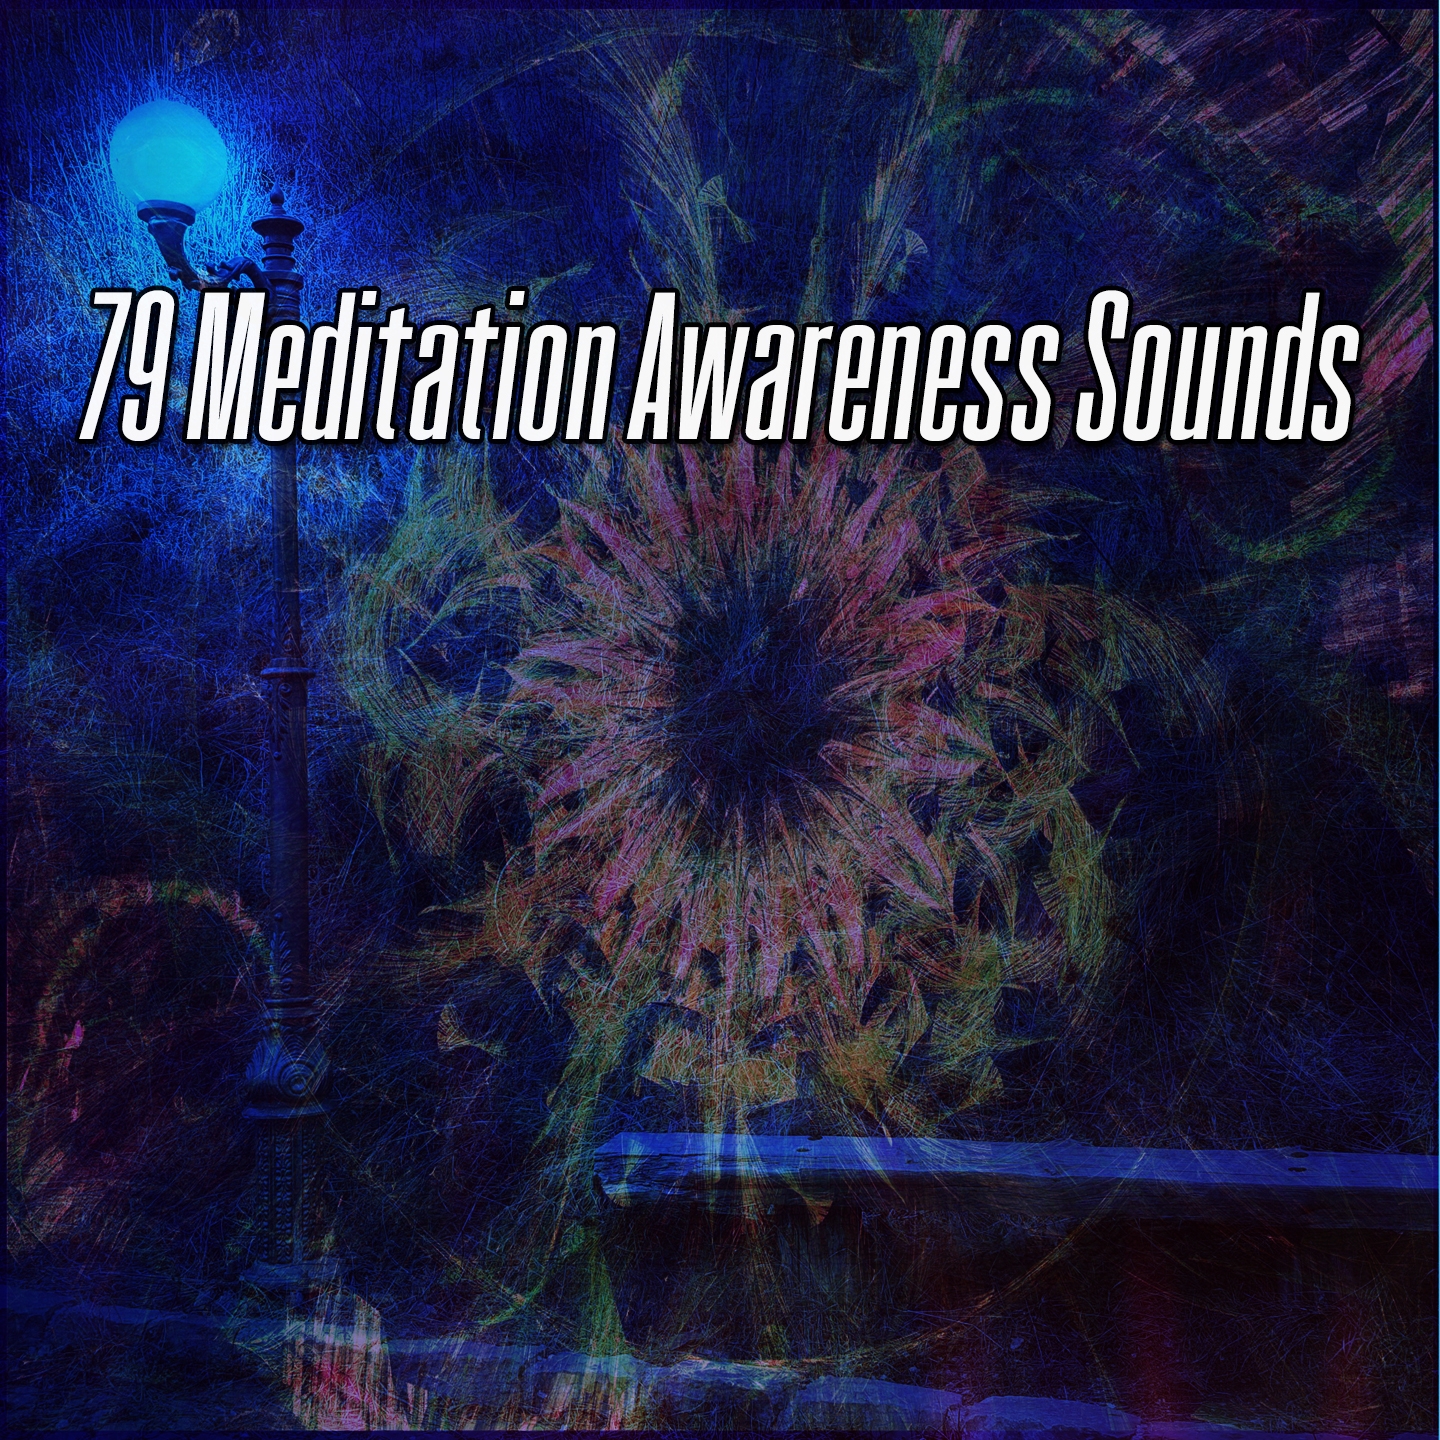 79 Meditation Awareness Sounds